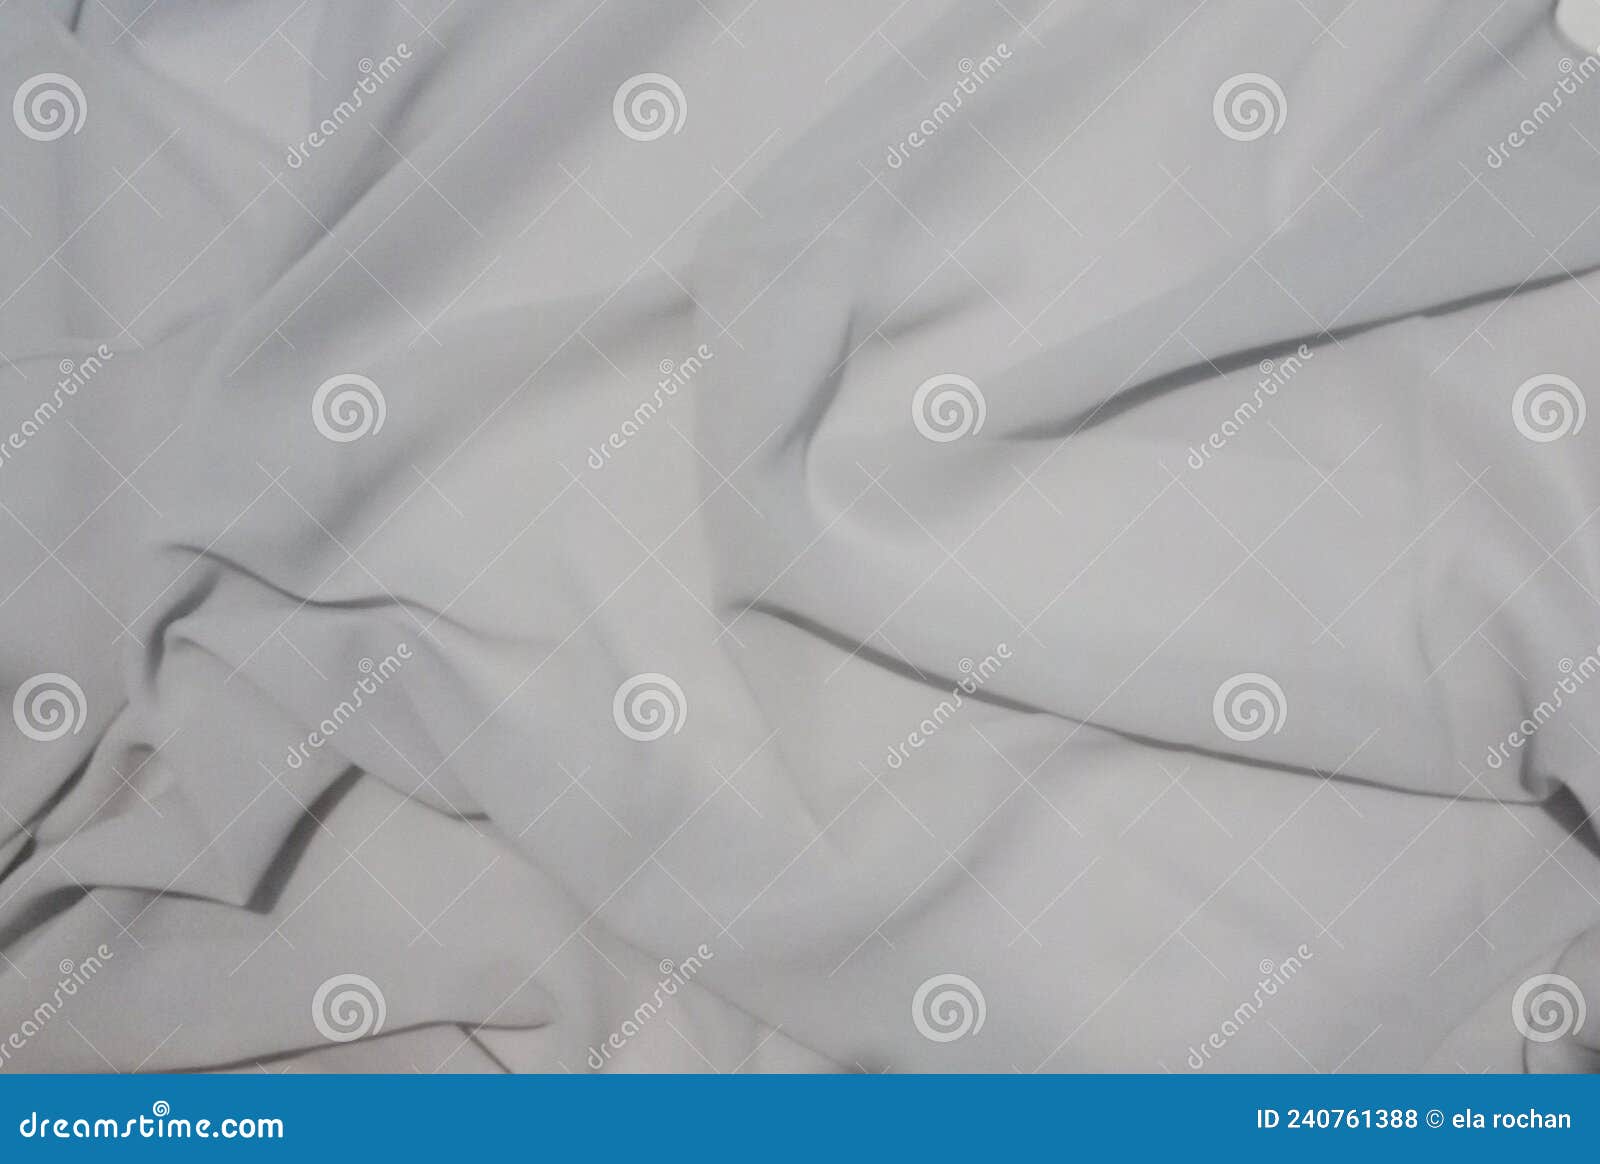 Grey chiffon fabric stock photo. Image of white, paper - 240761388